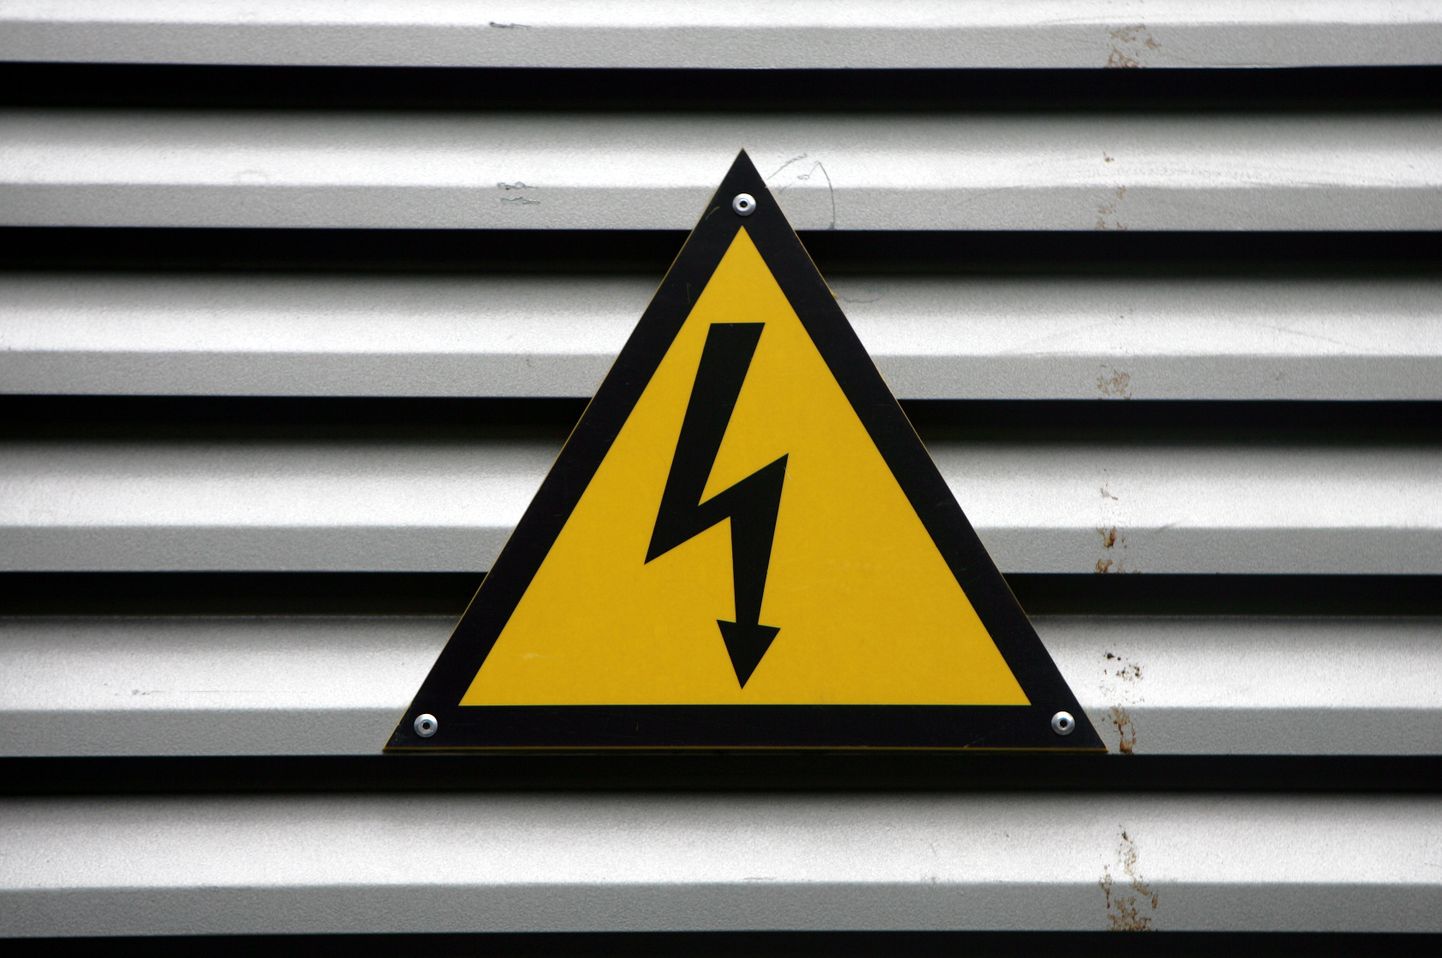 Emaljēta brīdinājuma zīme "Uzmanību! Elektrība" par augsto spriegumu pie transformatora apakšstacijas durvīm.